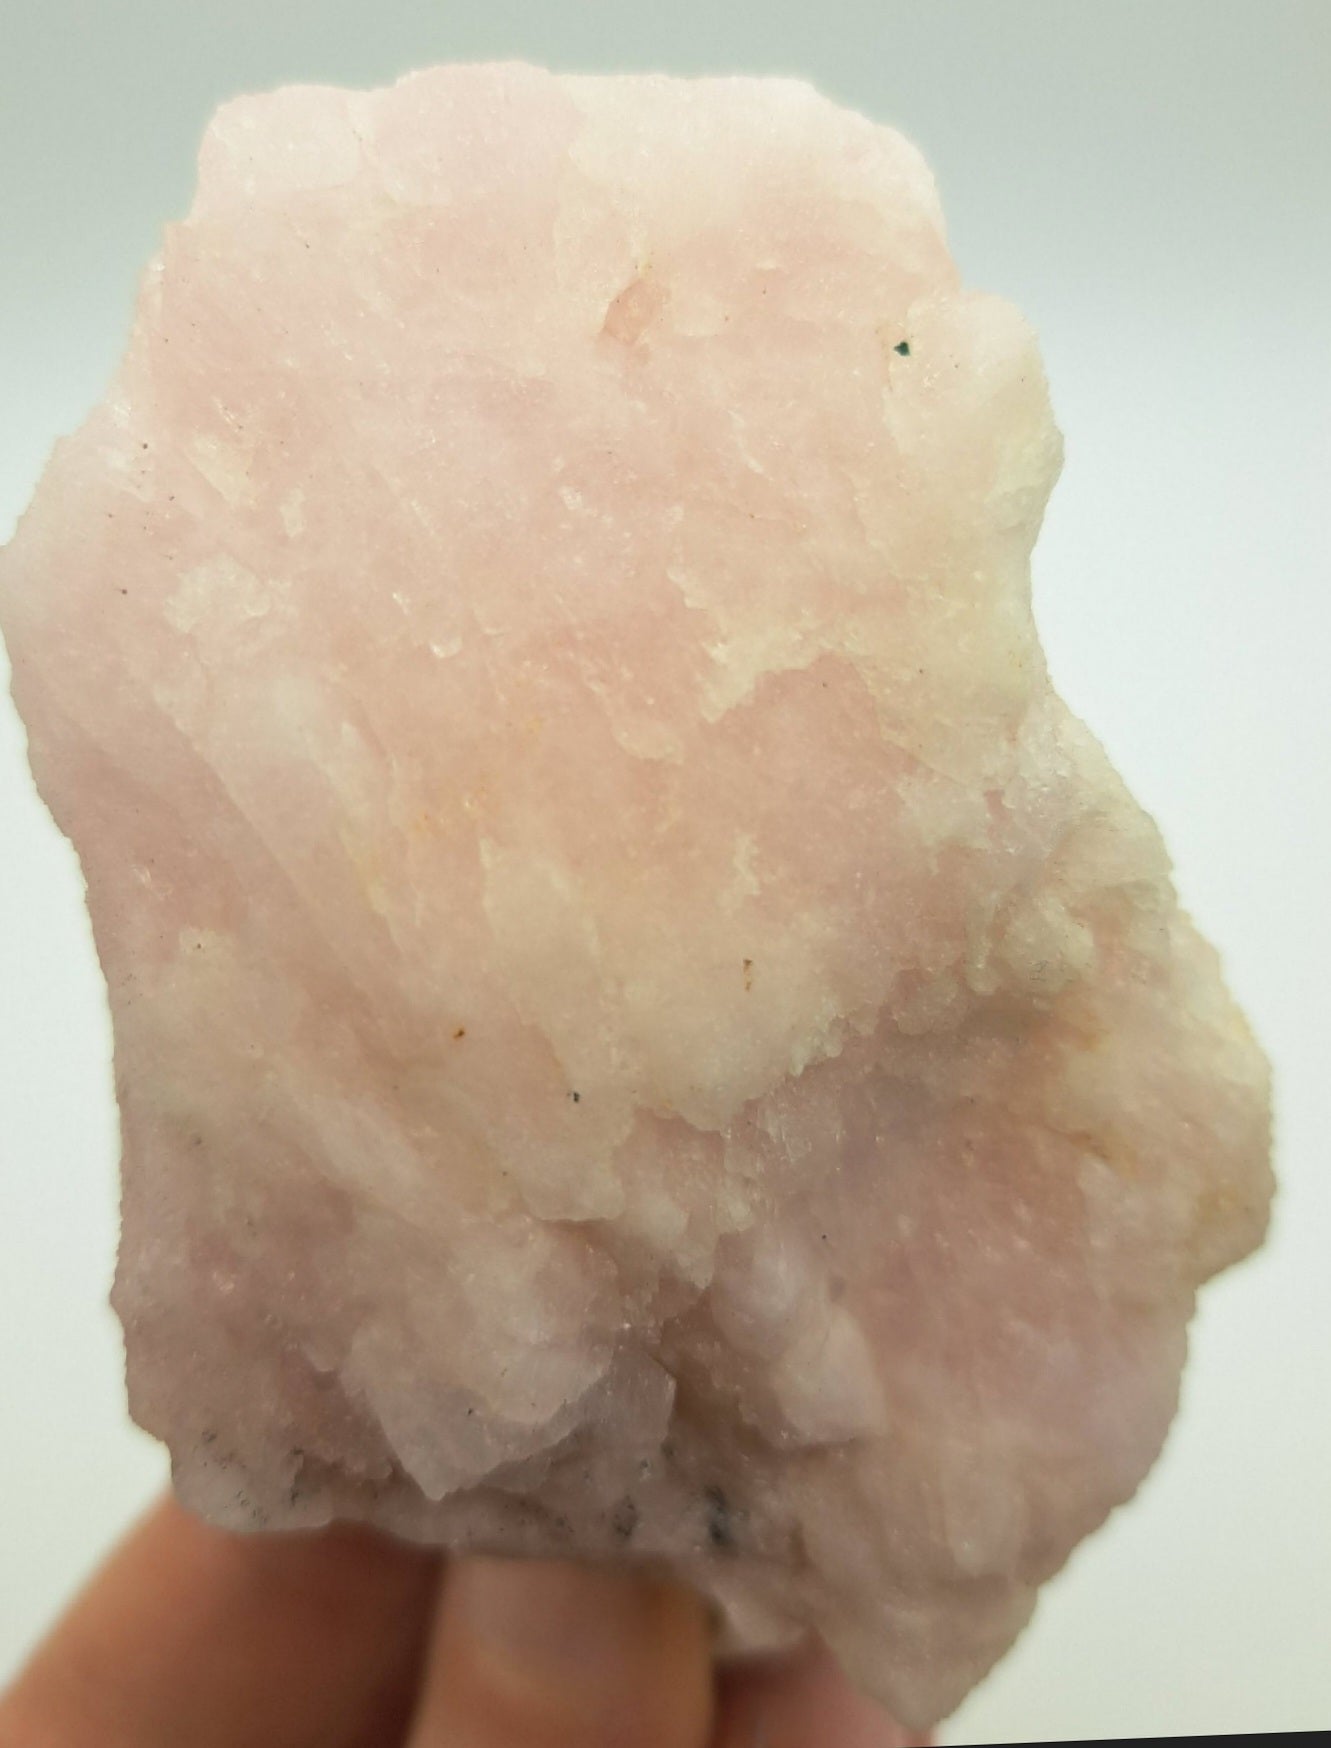 Natural Brazilian Morganite Crystal!